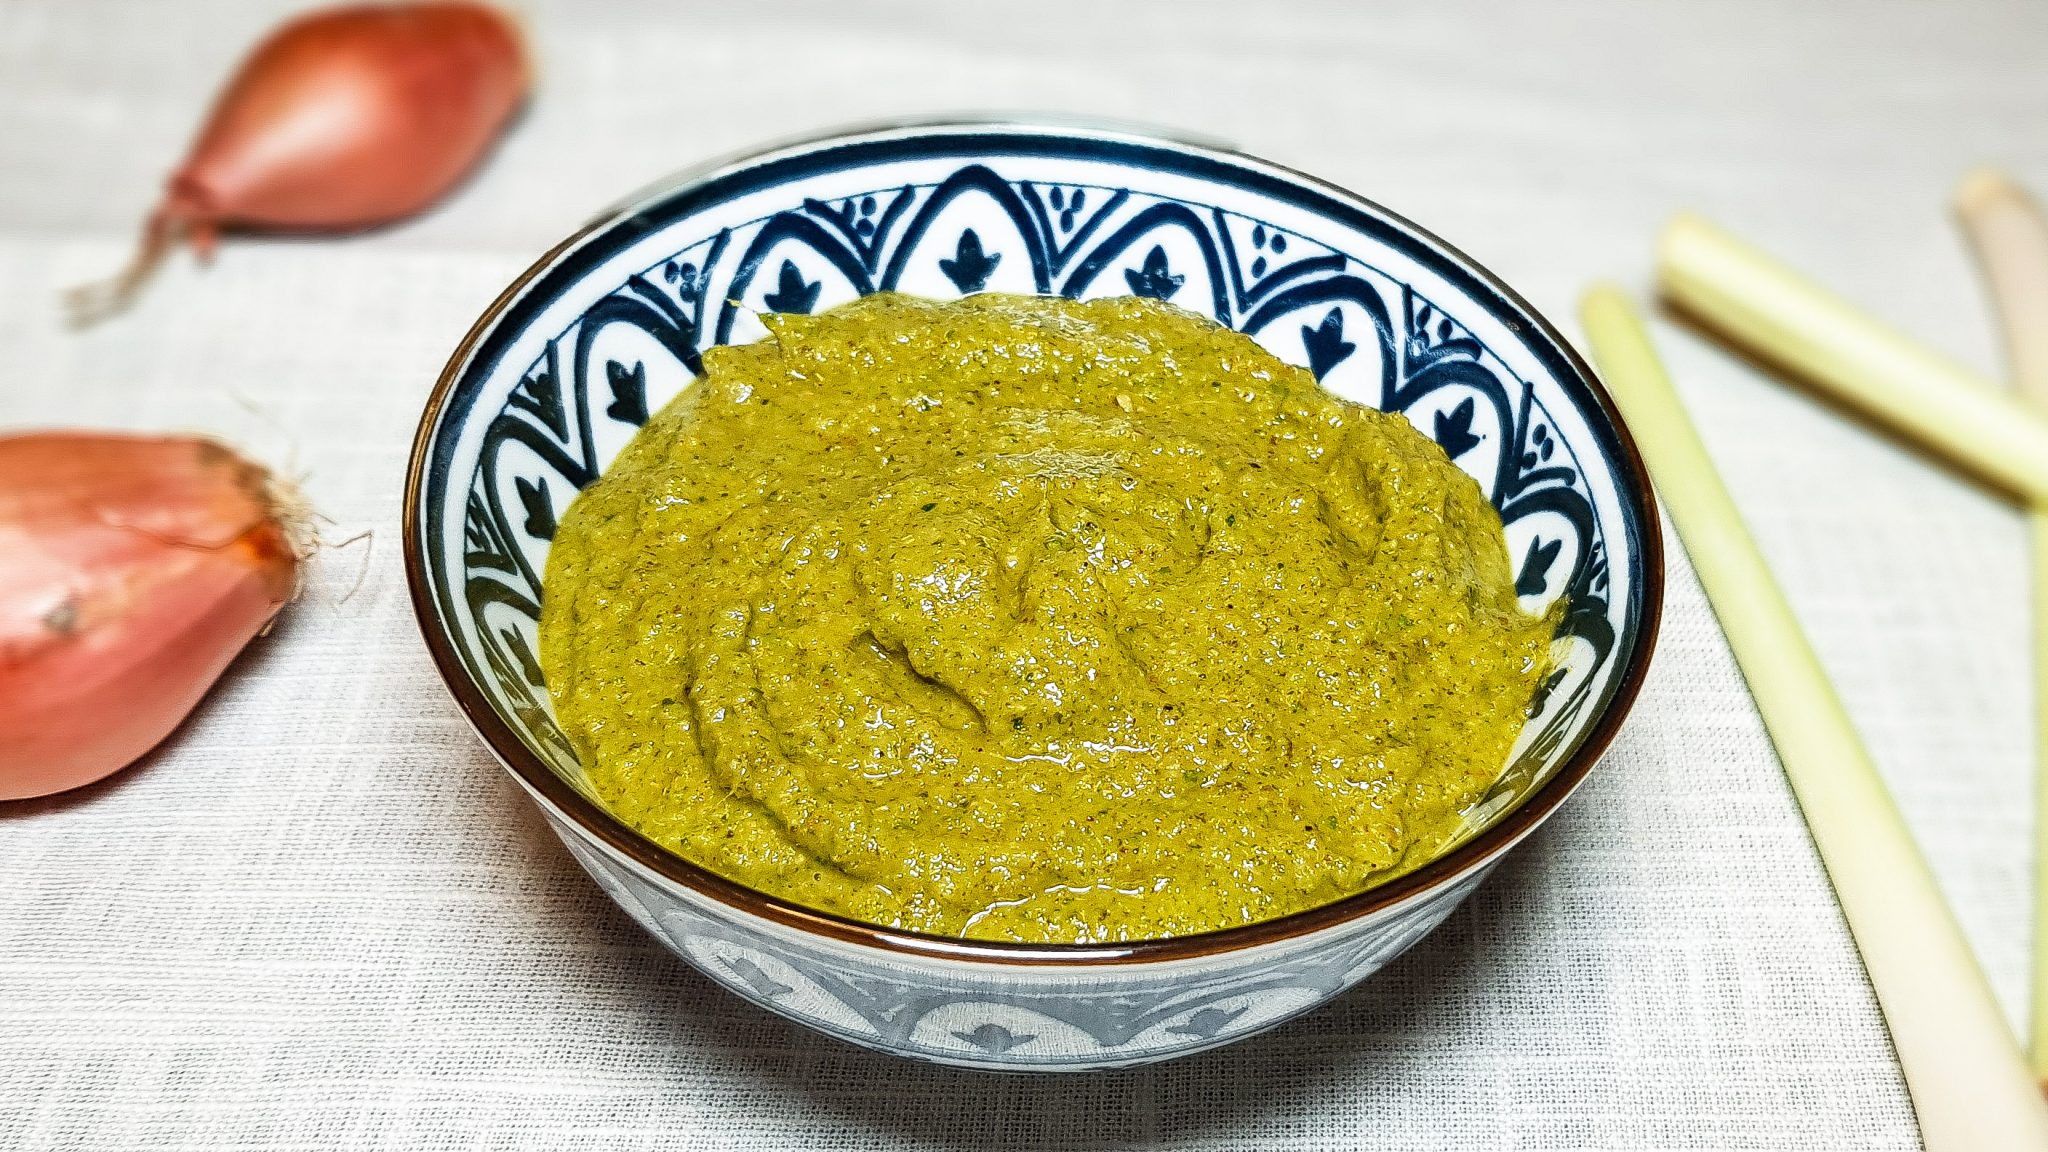 Slink Geval Geavanceerd Groene currypasta maken - EvieKookt